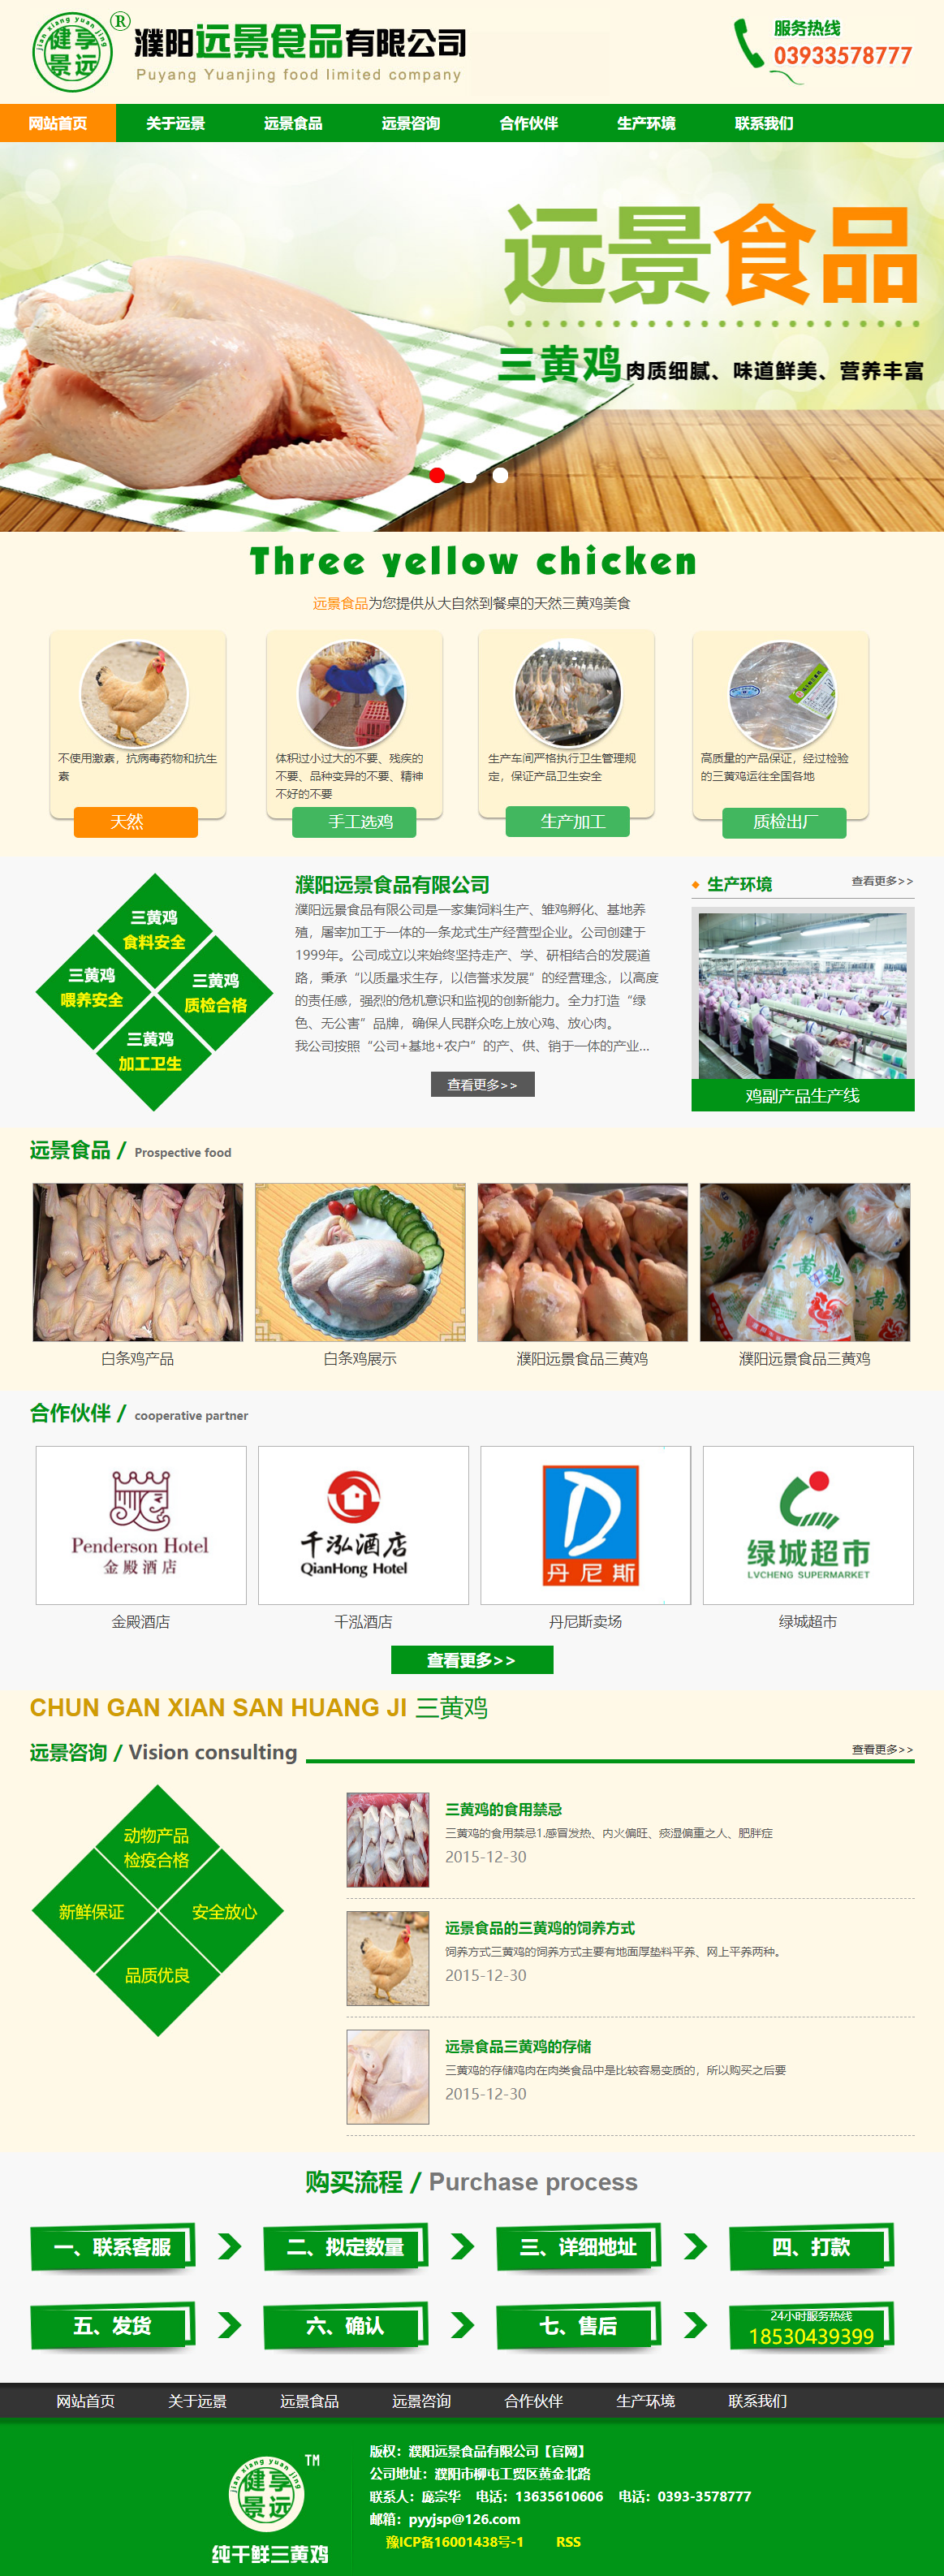 濮阳市远景食品有限公司网站案例